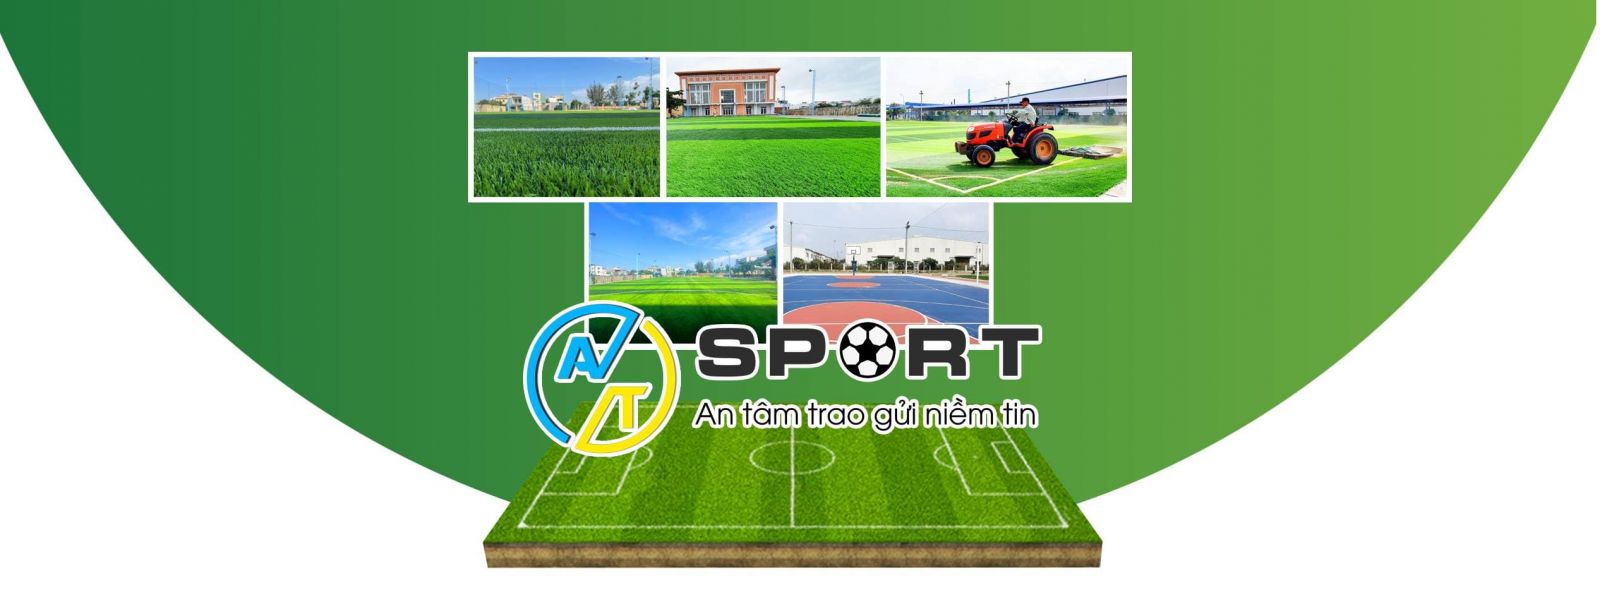 Thi công cỏ nhân tạo sân bóng đá tại huyện Đak Đoa, Gia Lai